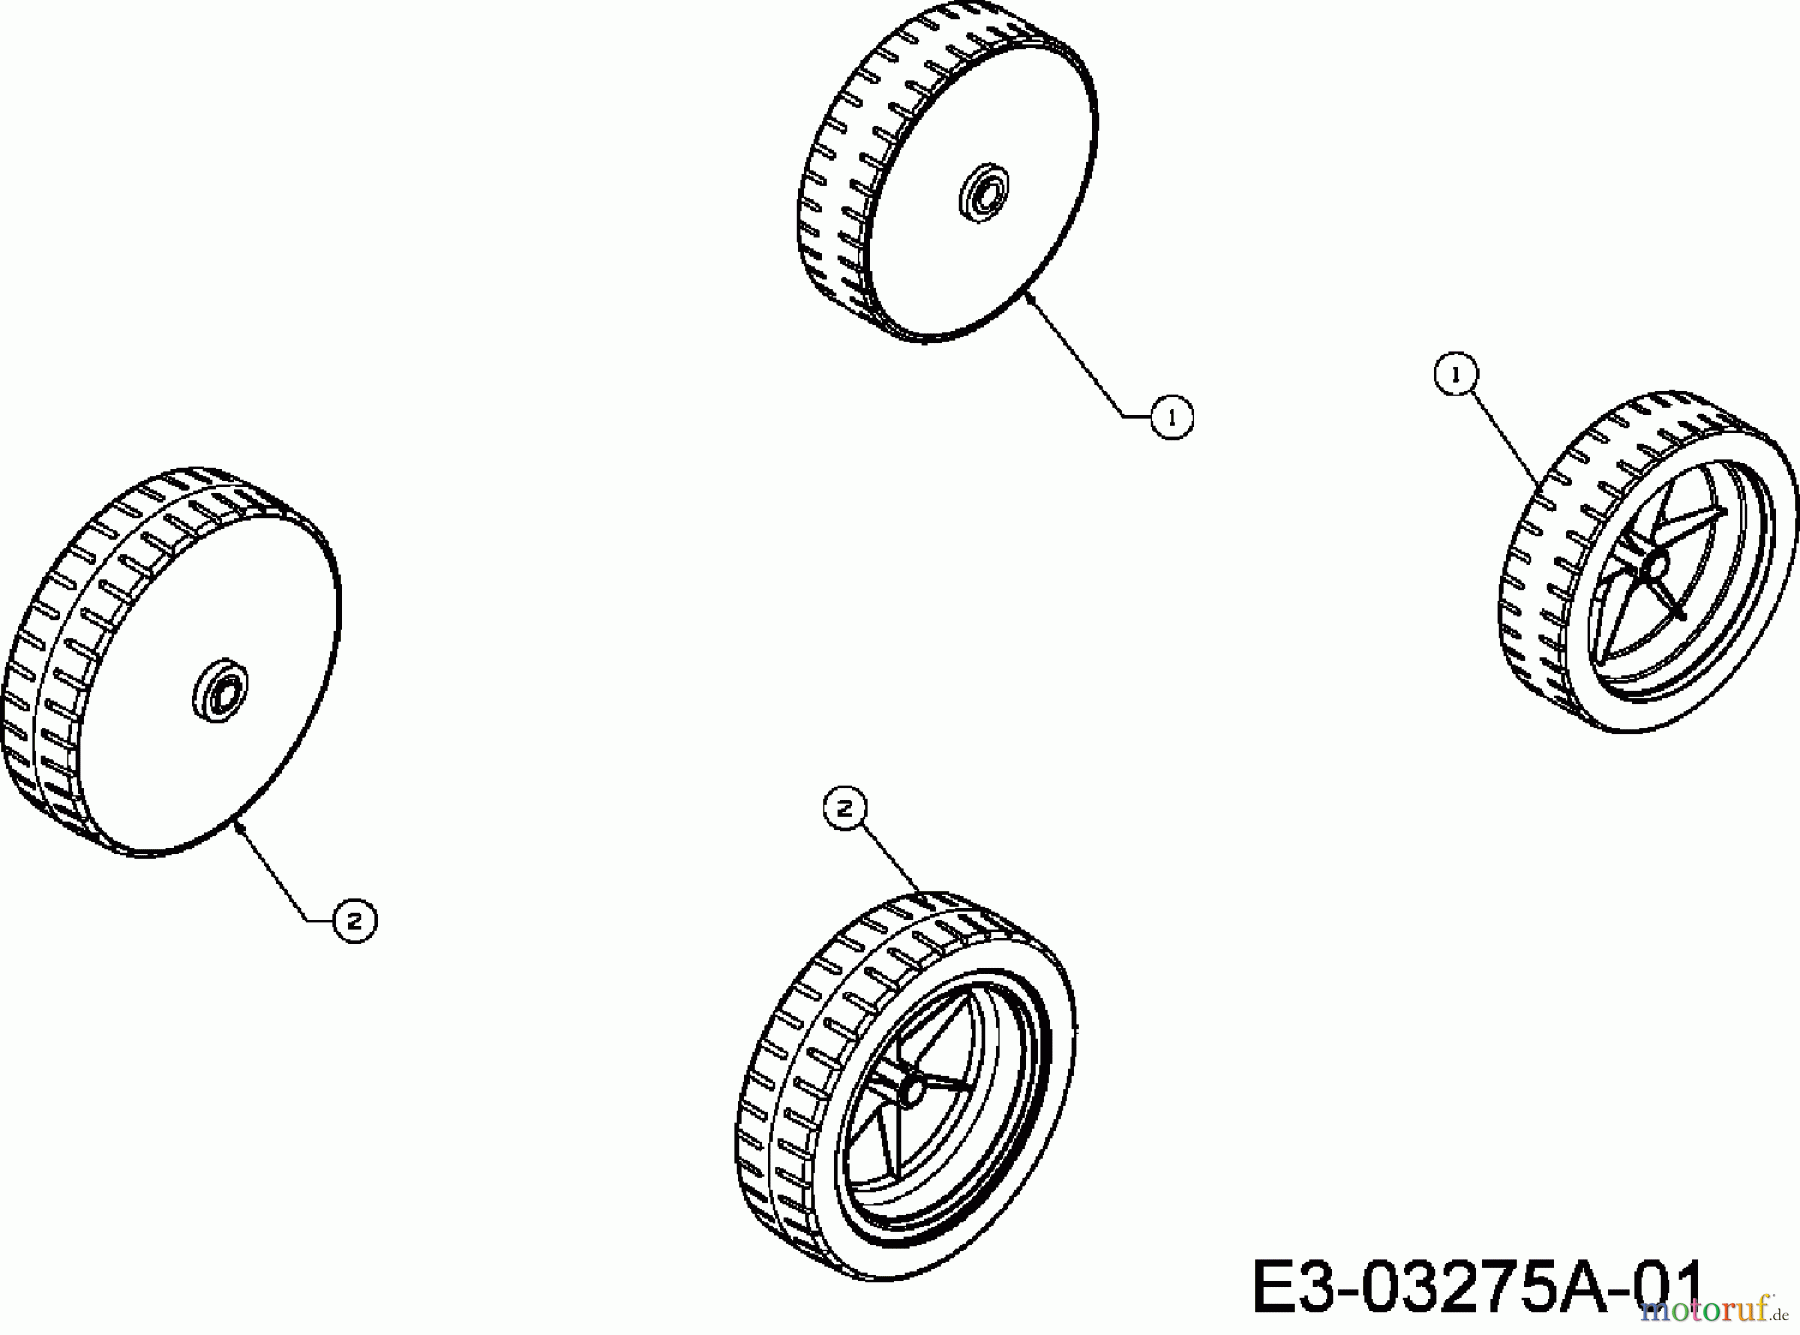  Raiffeisen Elektromäher RE 40 18C-N4S-628  (2010) Räder